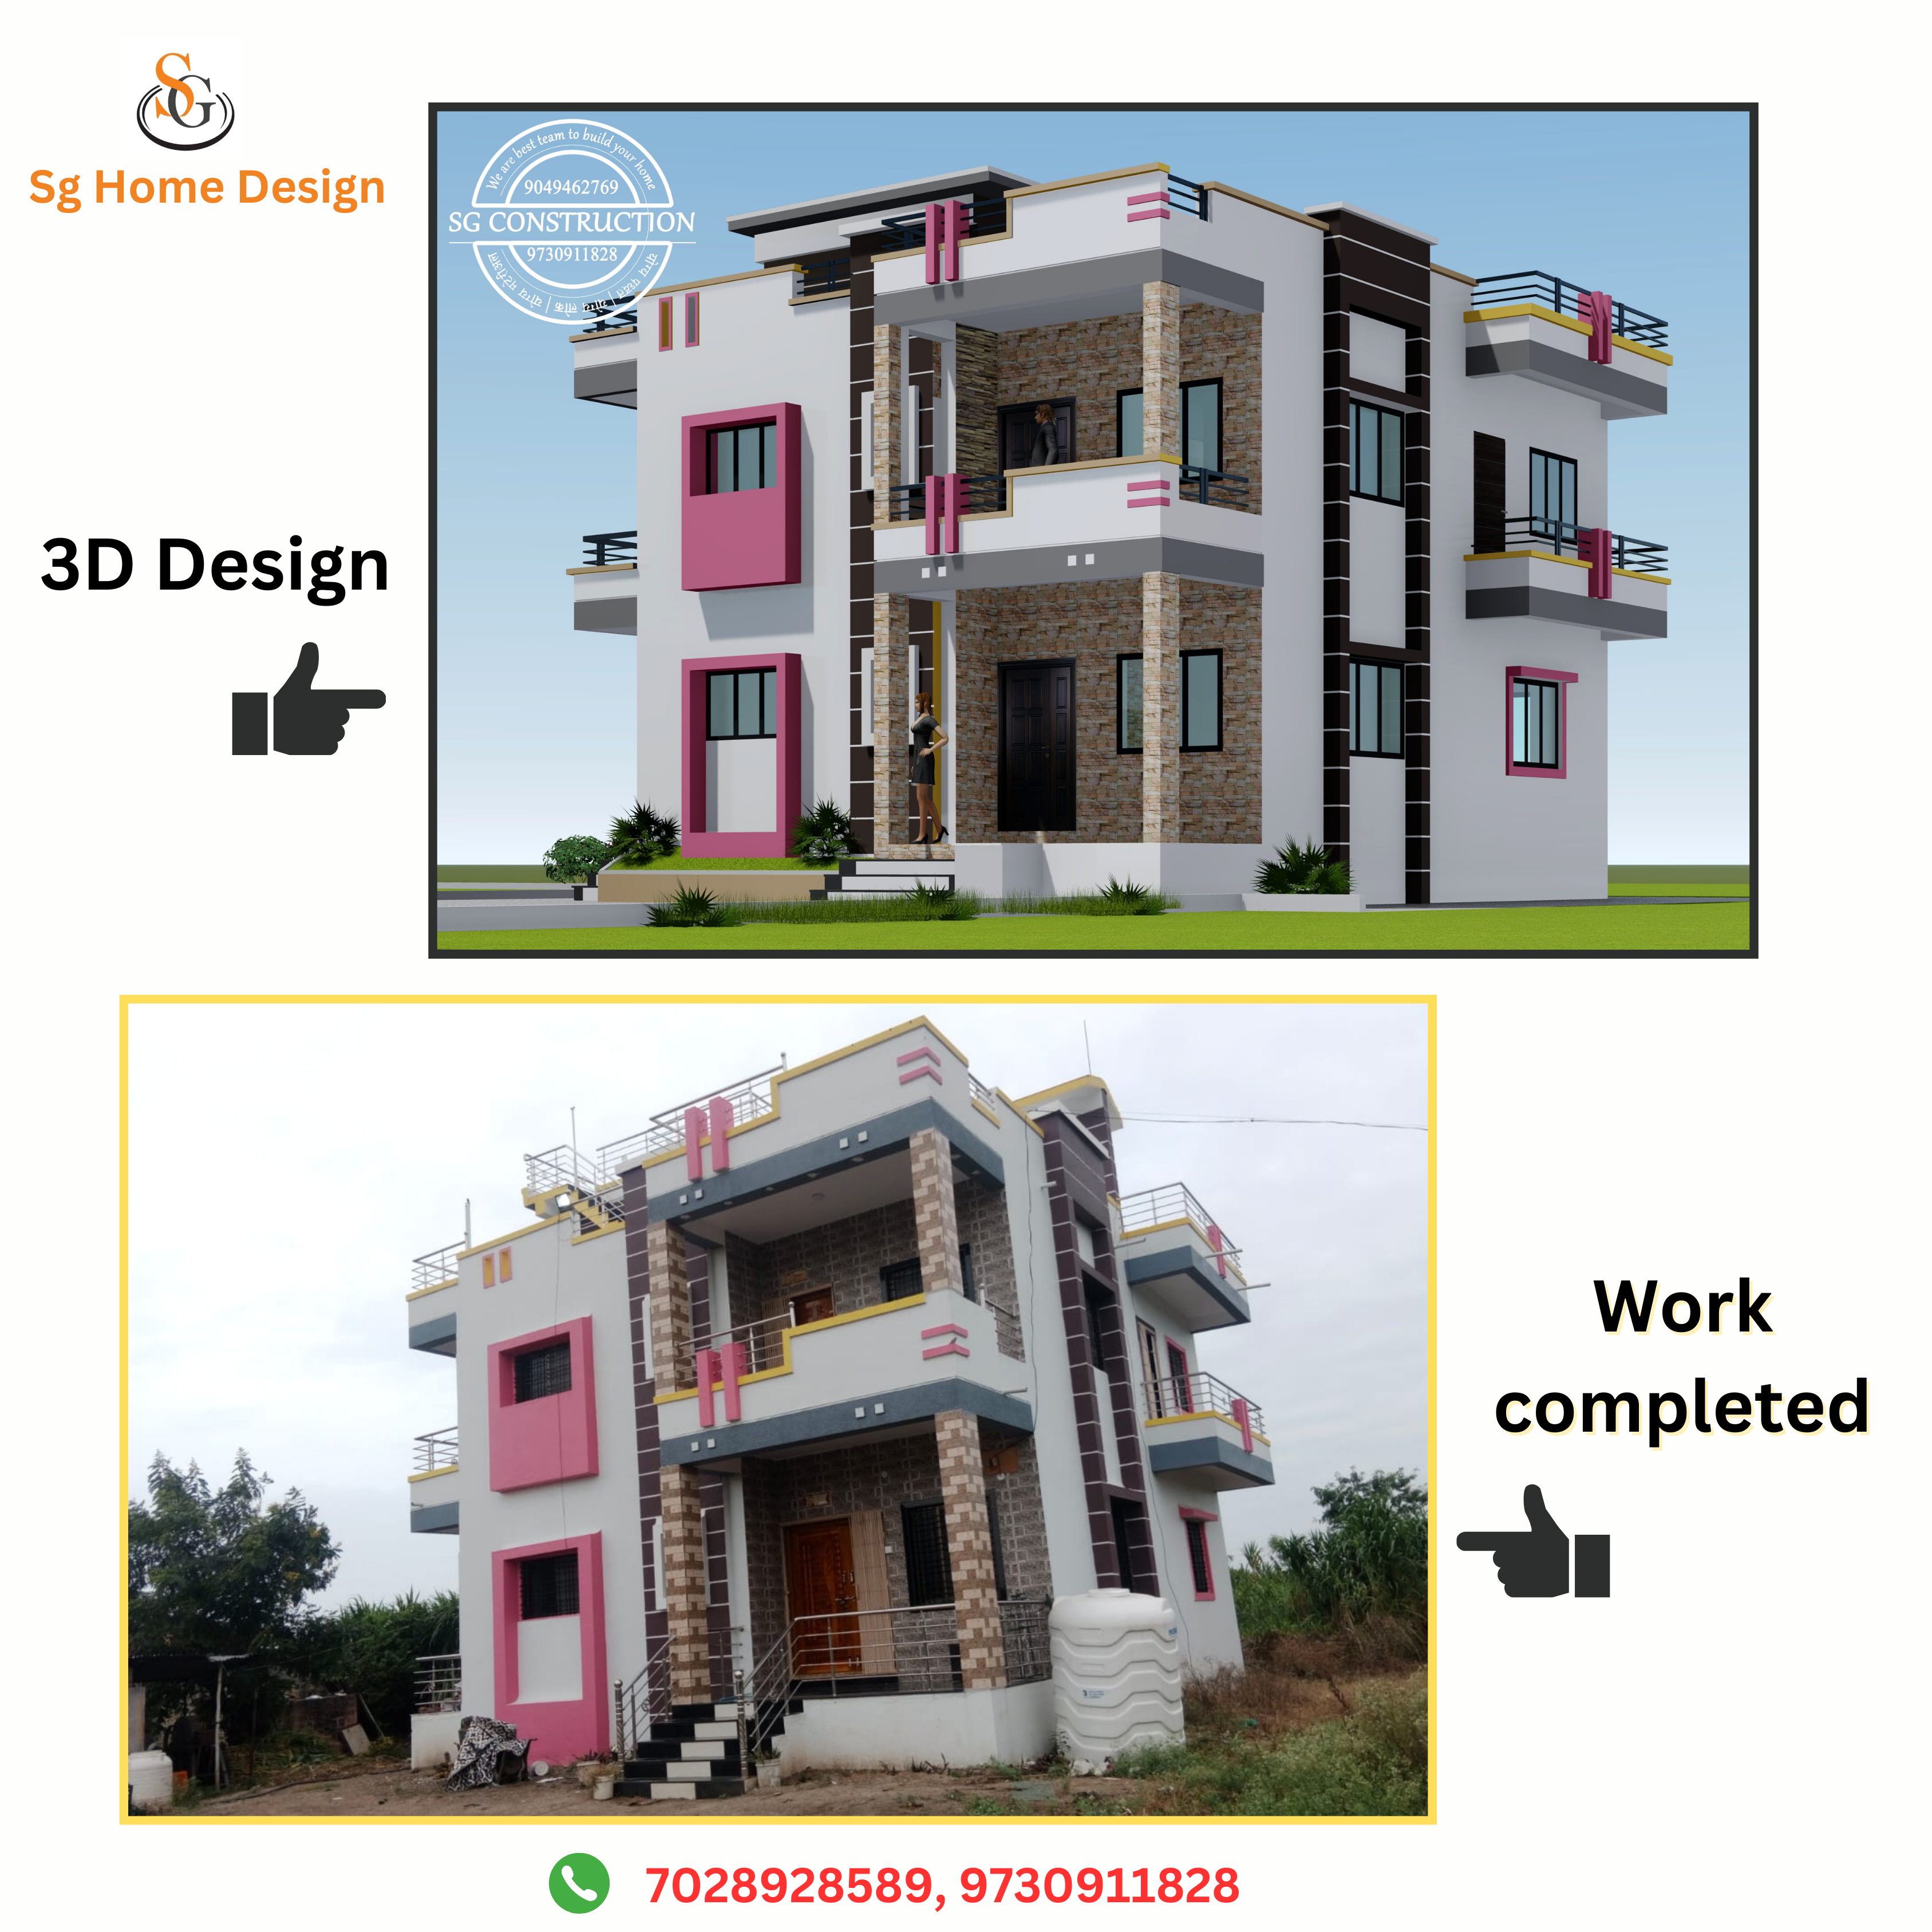 Sg home design